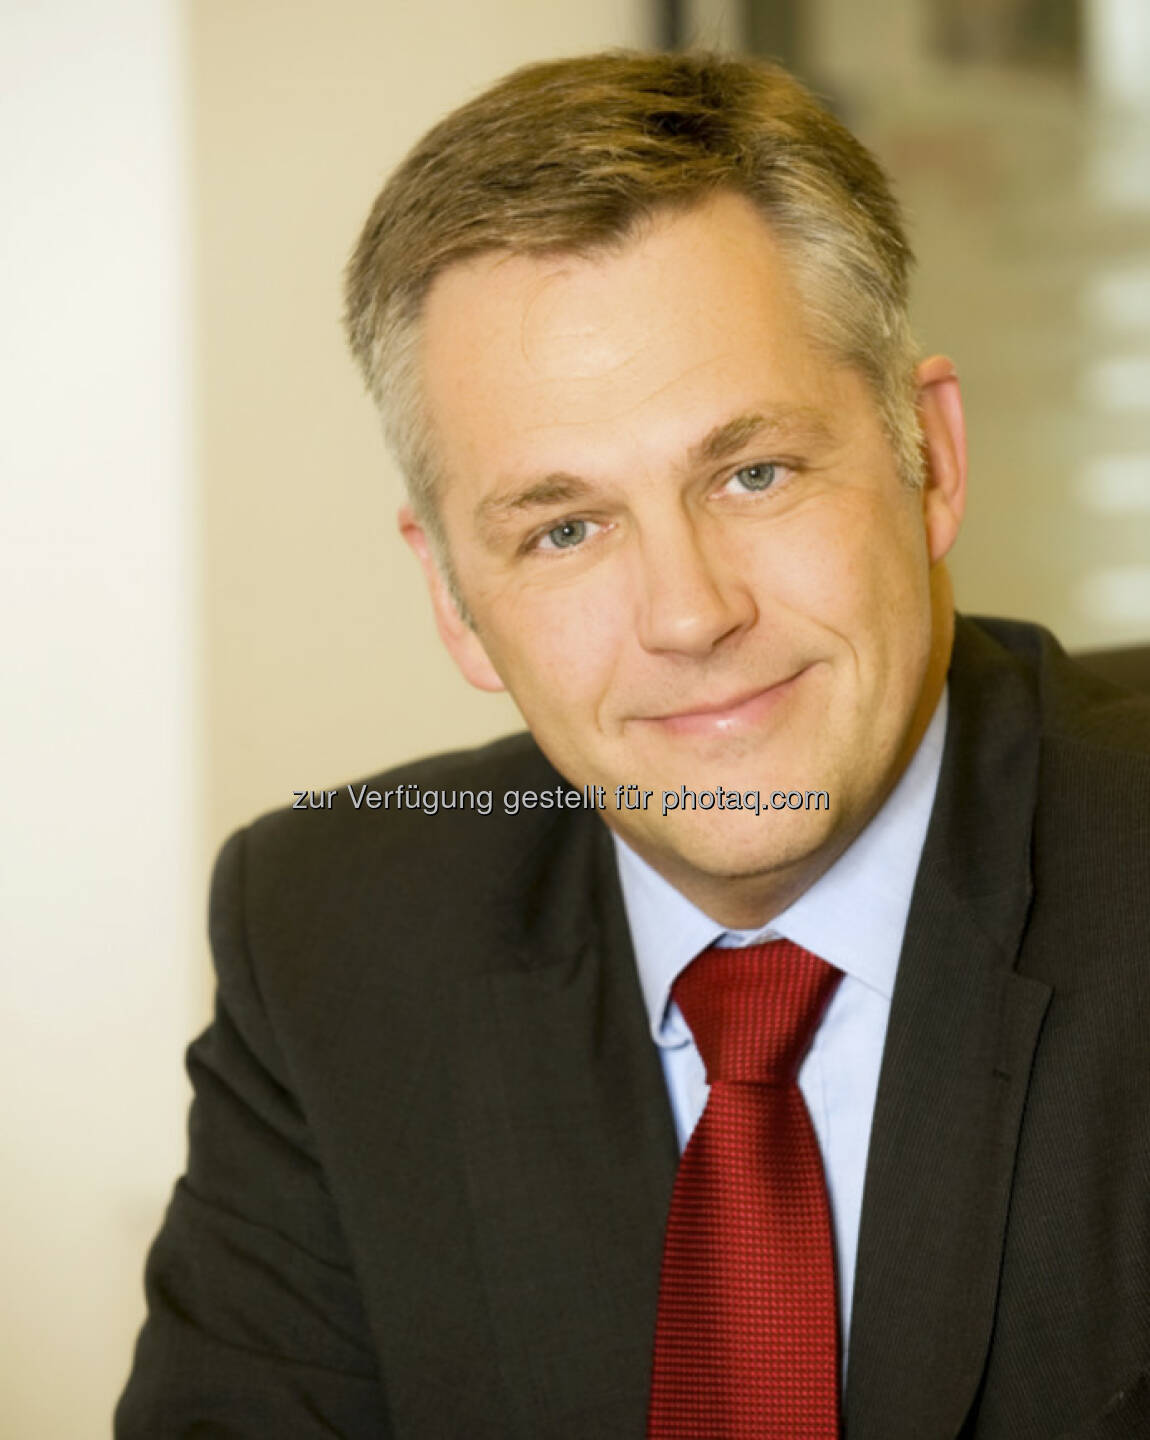 Bawag P.S.K.: Wolfgang Klein, Vorstandsmitglied für das Privat- und Geschäftskundengeschäft, wird per 1.1.2013 auch stellvertretender Vorstandsvorsitzender der BAWAG P.S.K. (c) Bawag P.S.K.